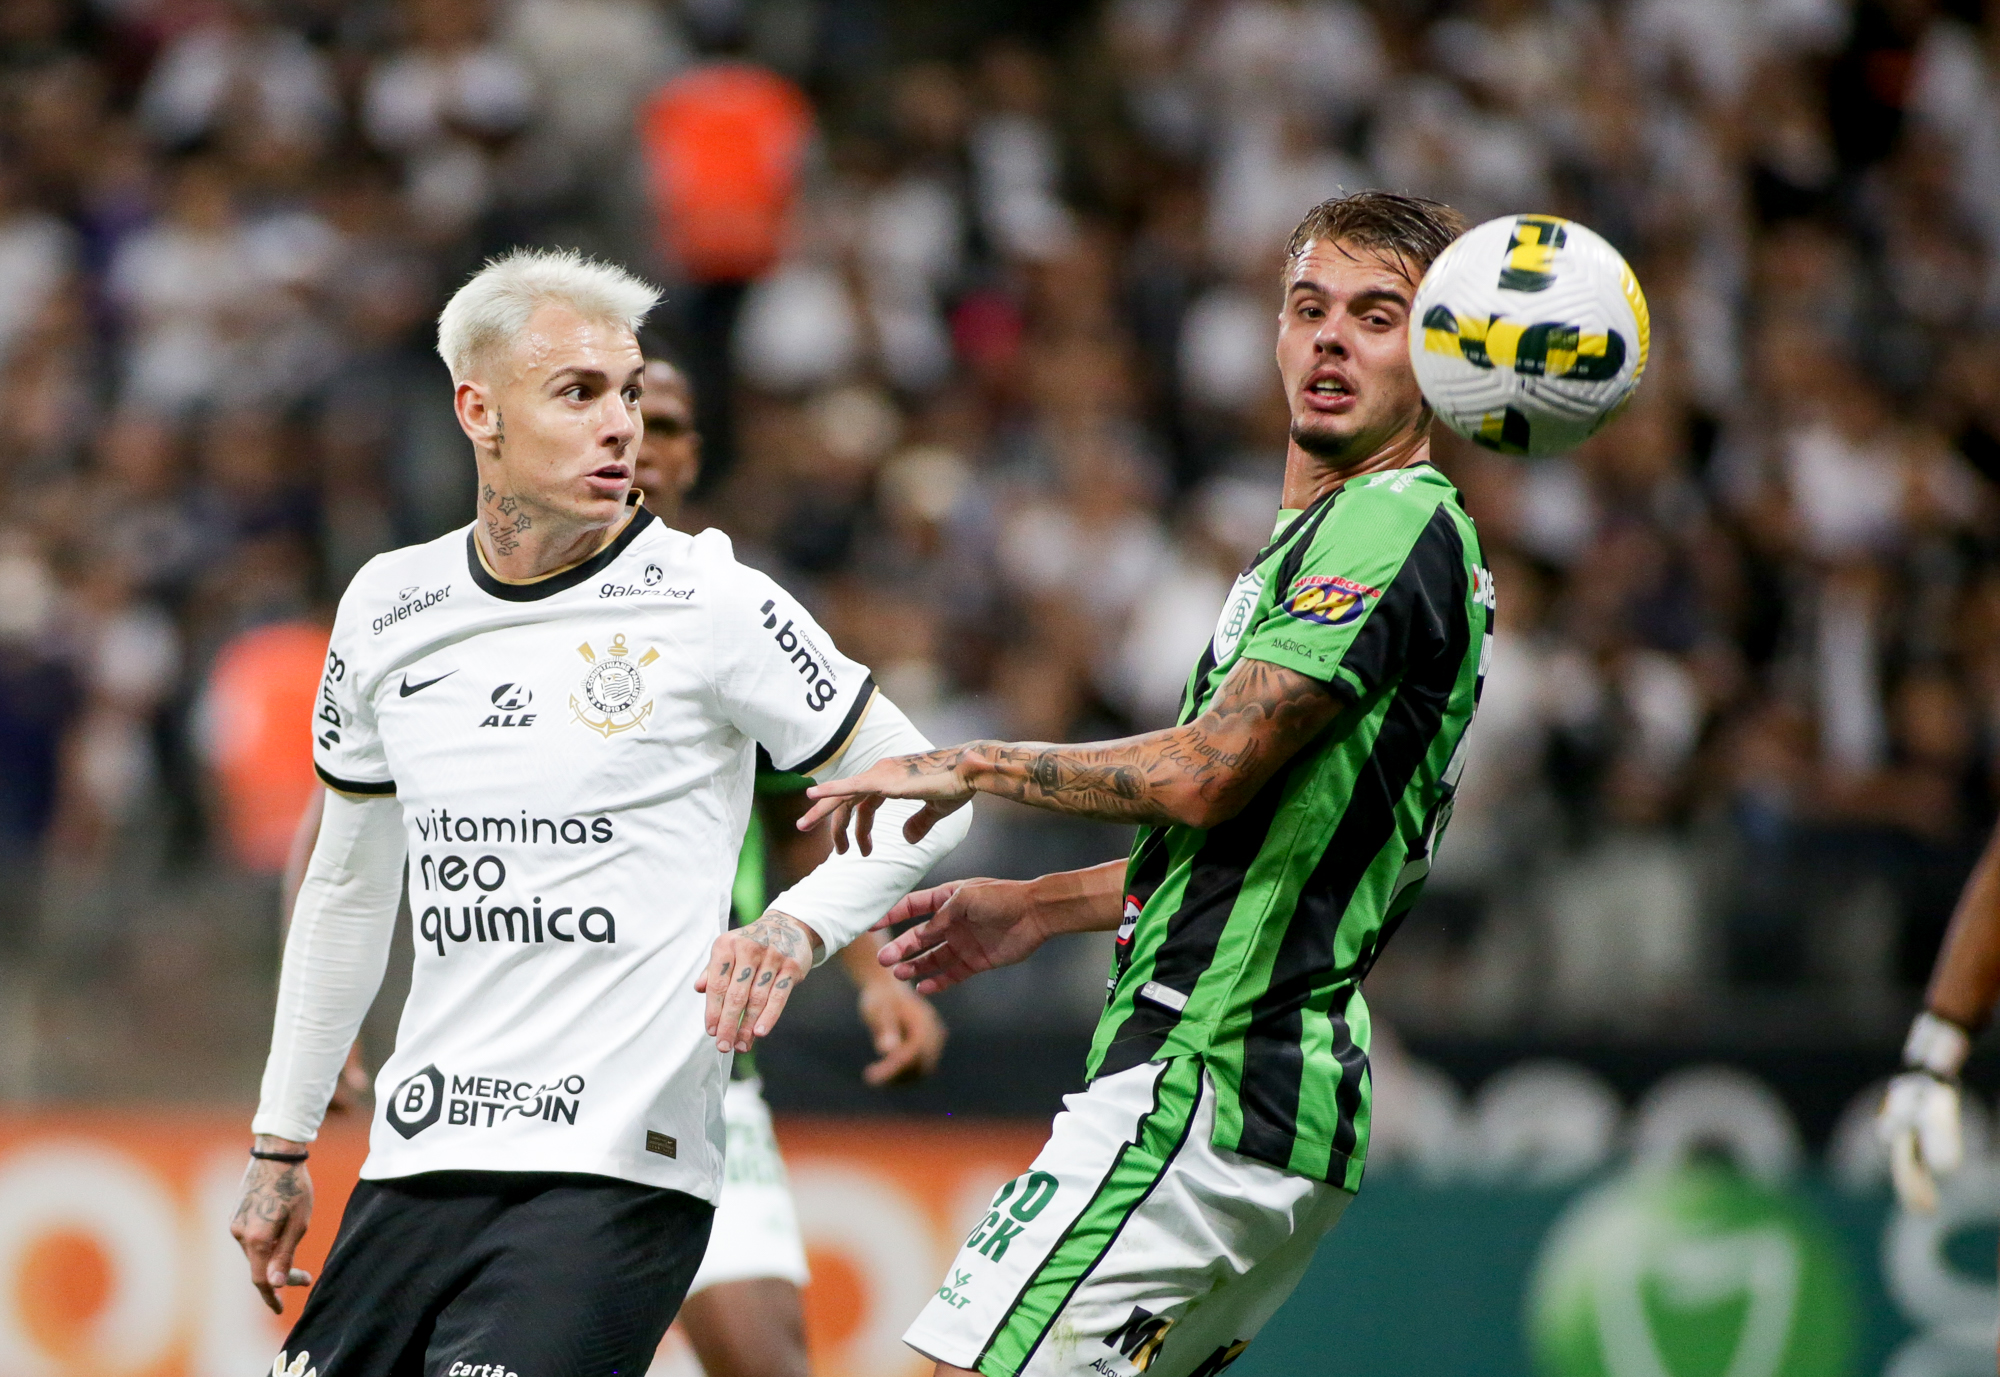 Agora bicampeão brasileiro pelo Corinthians, Jadson abre o jogo sobre  condição de reserva